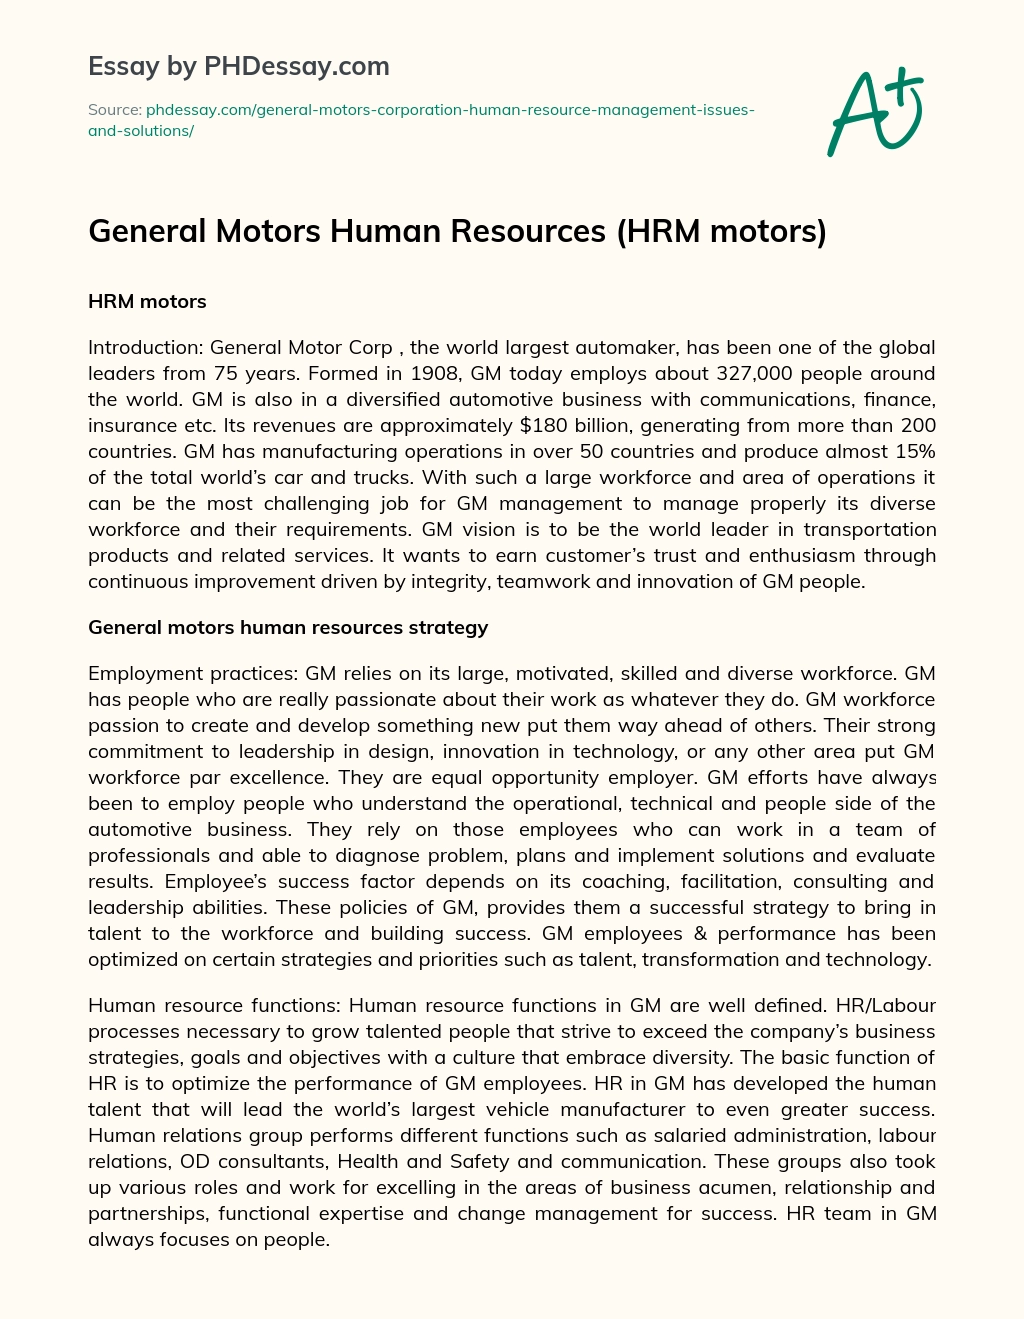 General Motors Human Resources (HRM motors) essay